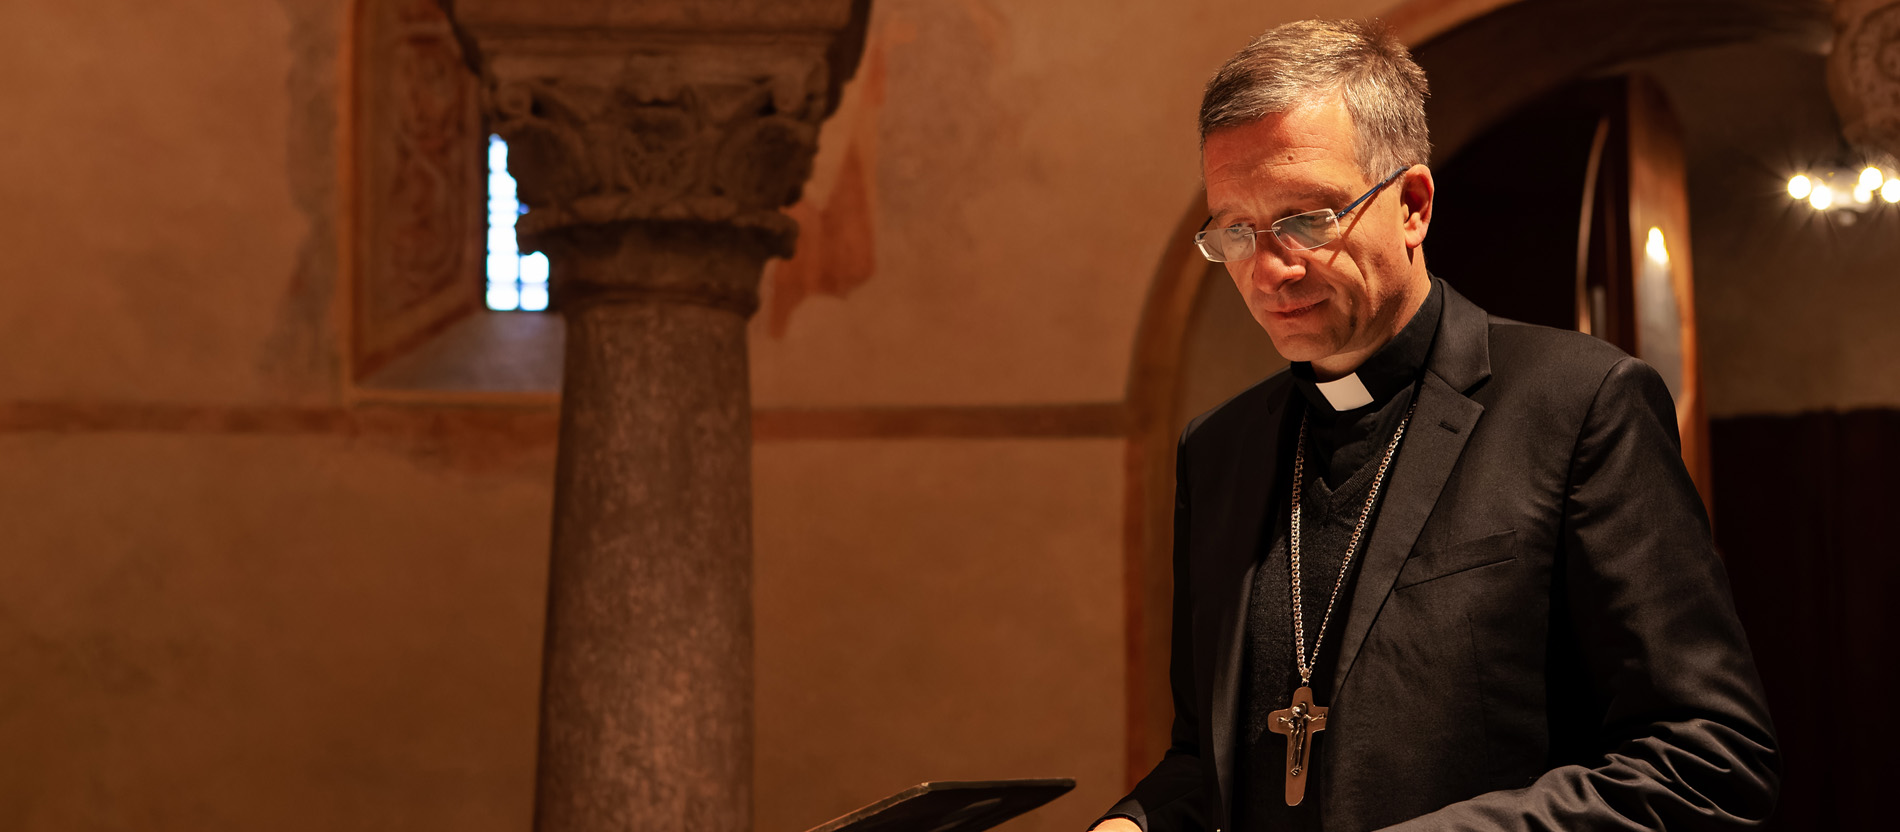 Biskup: Novi vatikanski dokument je važan signal protiv diskriminacije